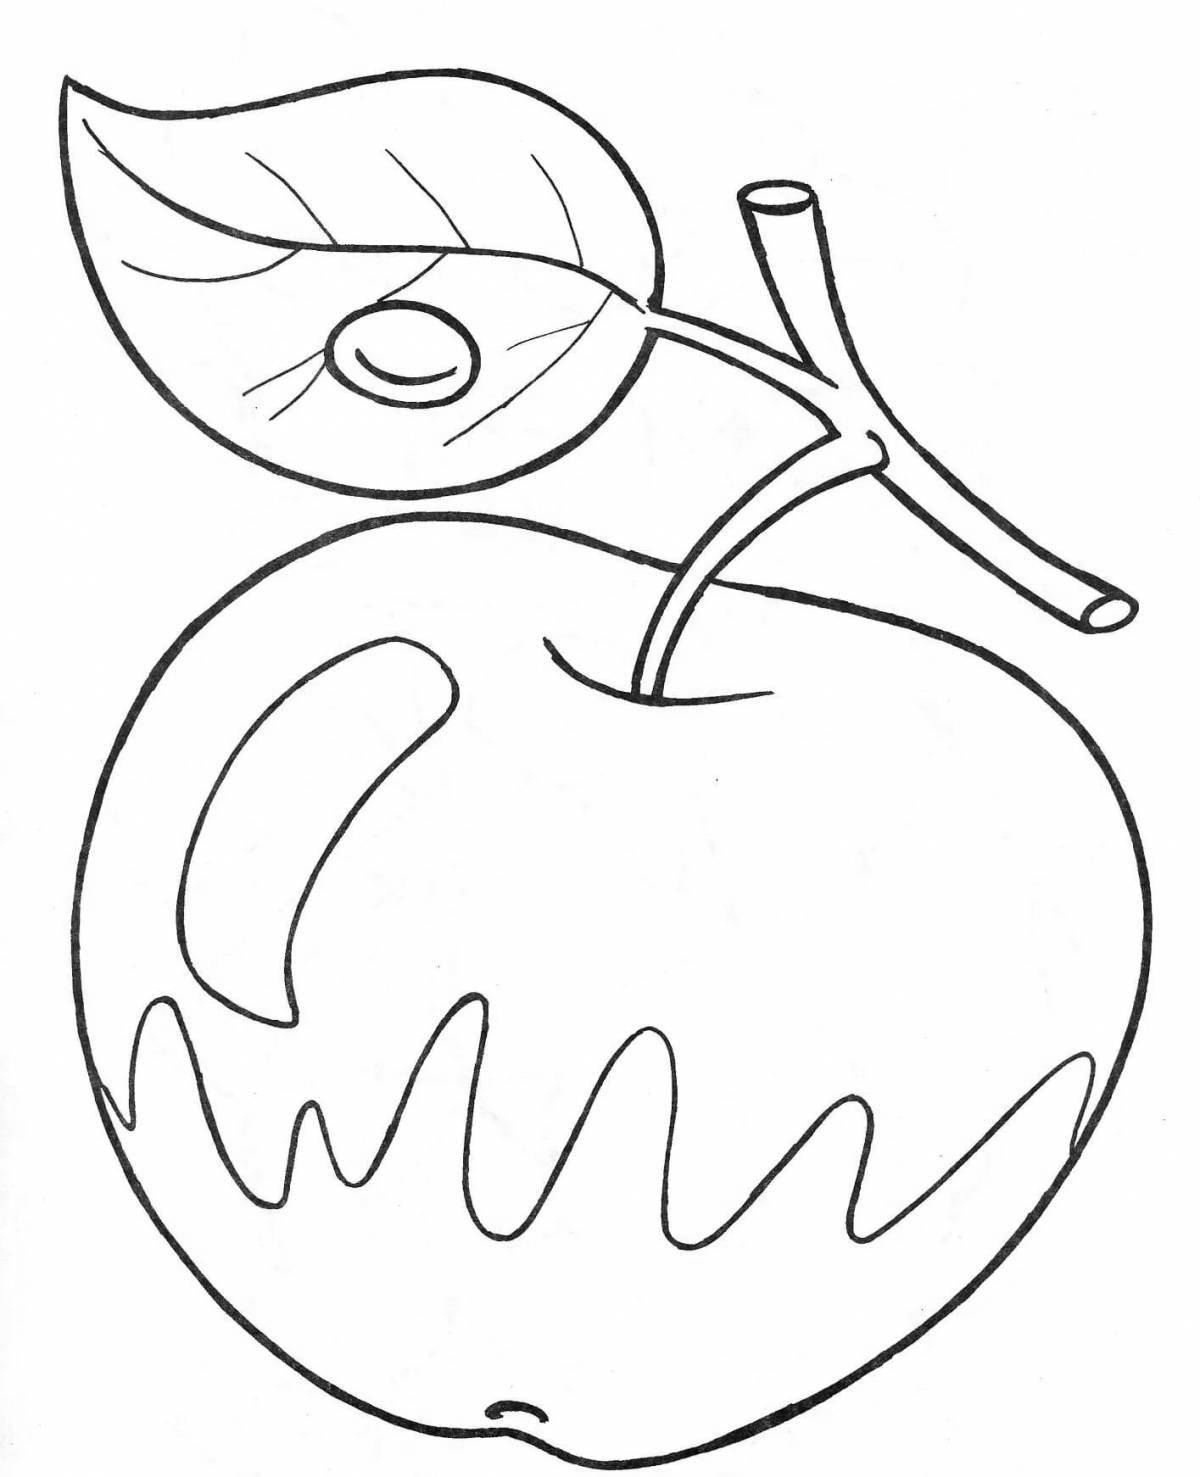 Раскраска apple с цветными брызгами для детей 4-5 лет